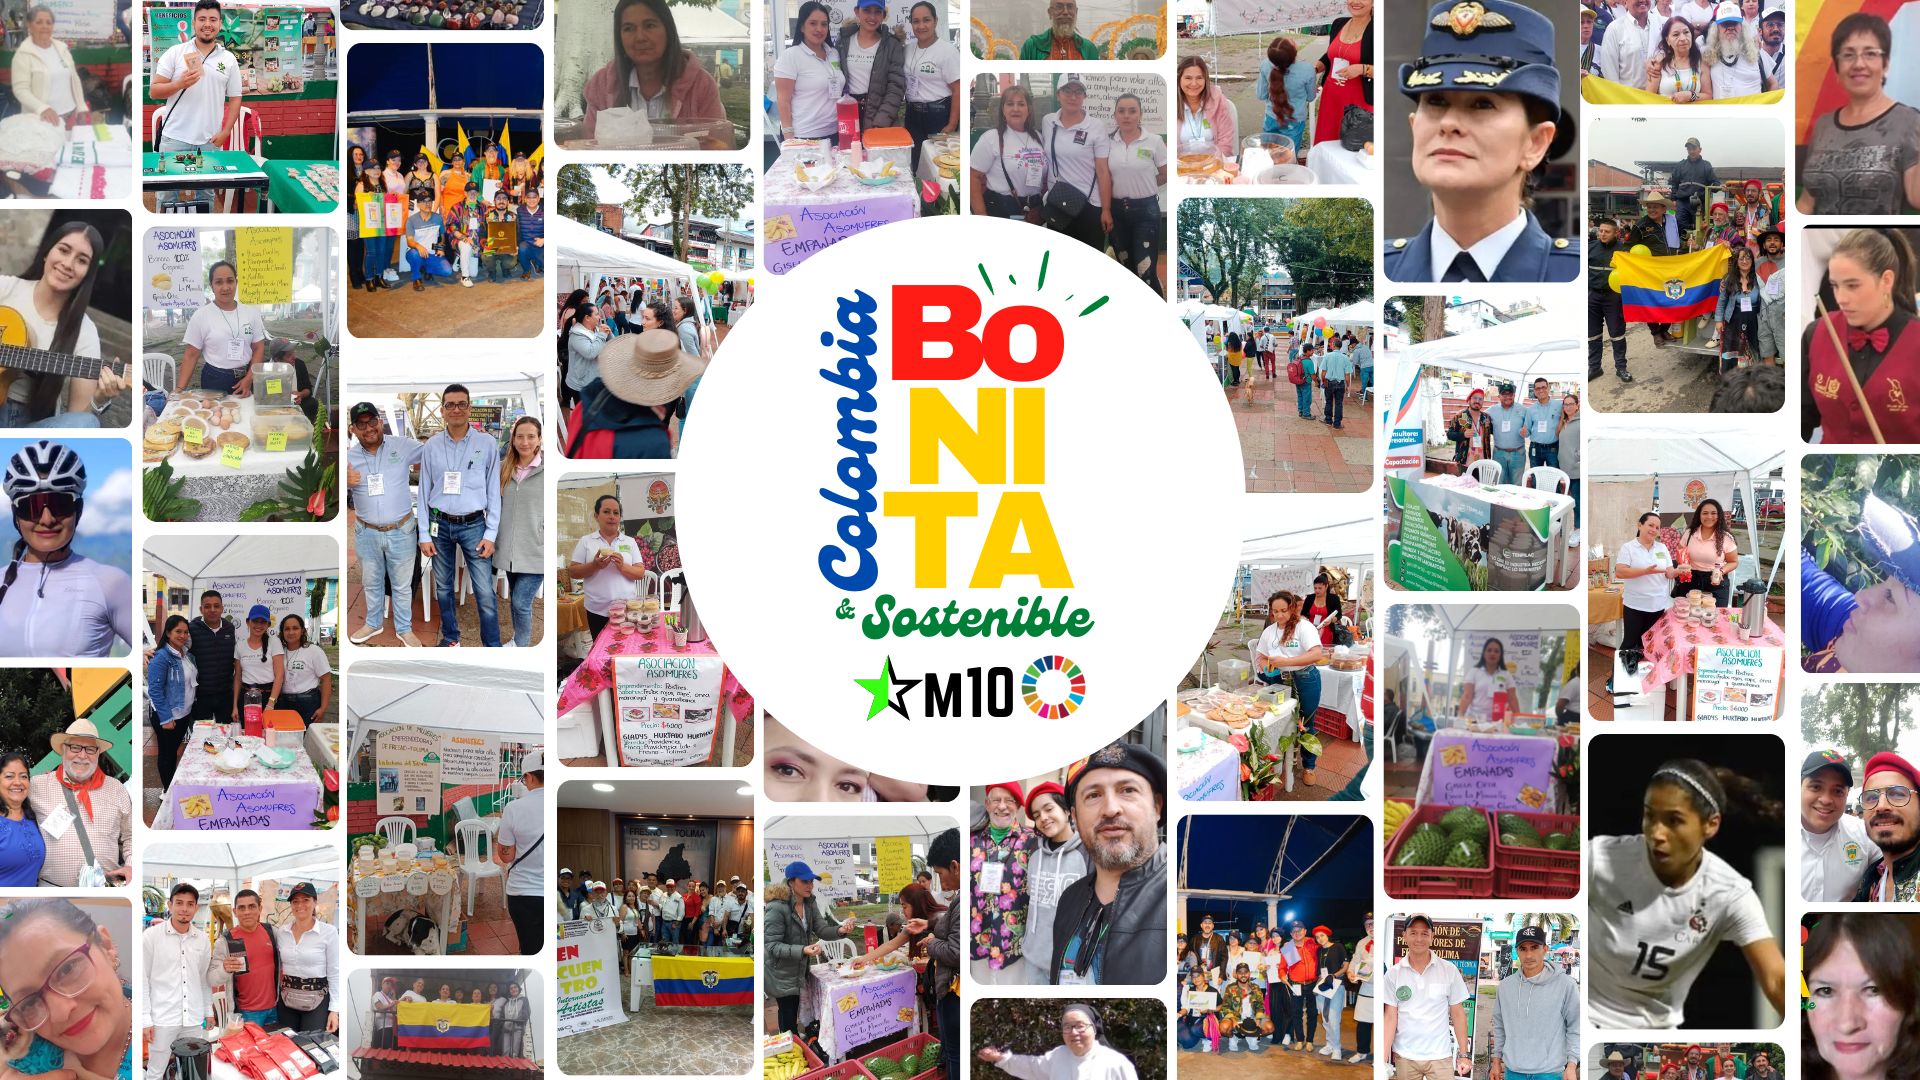 Fresno, Tolima vibró con el exitoso mega evento Colombia Bonita y Sostenible de M10